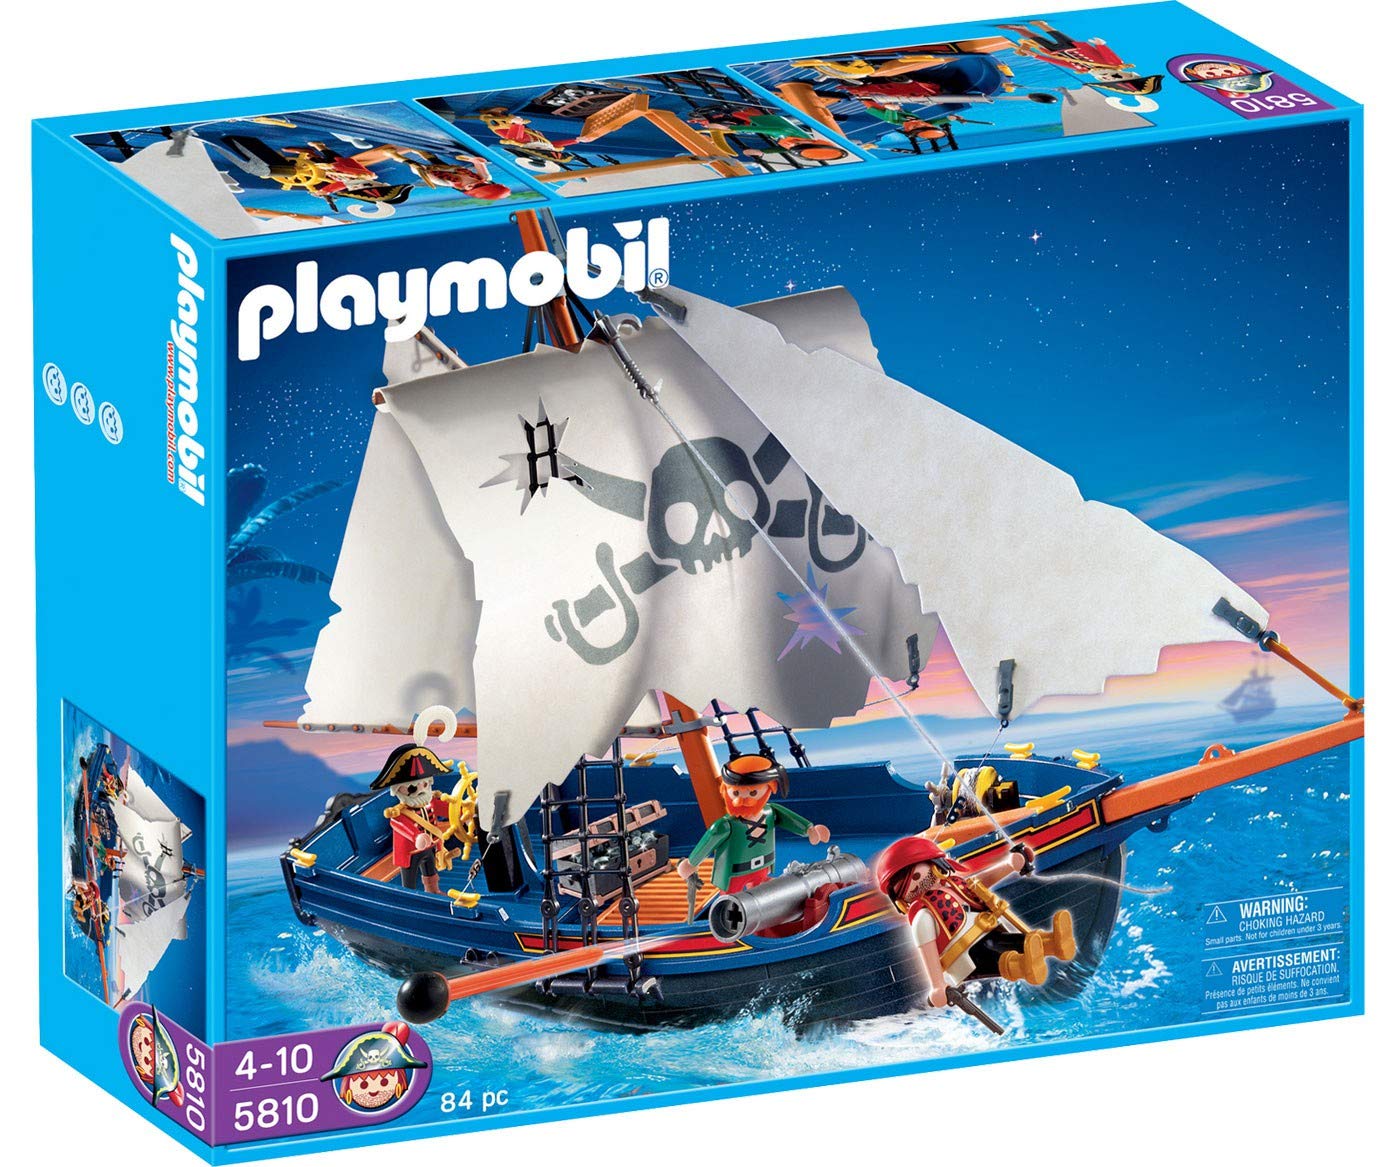 Playmobil 5810 Pirate Corsair